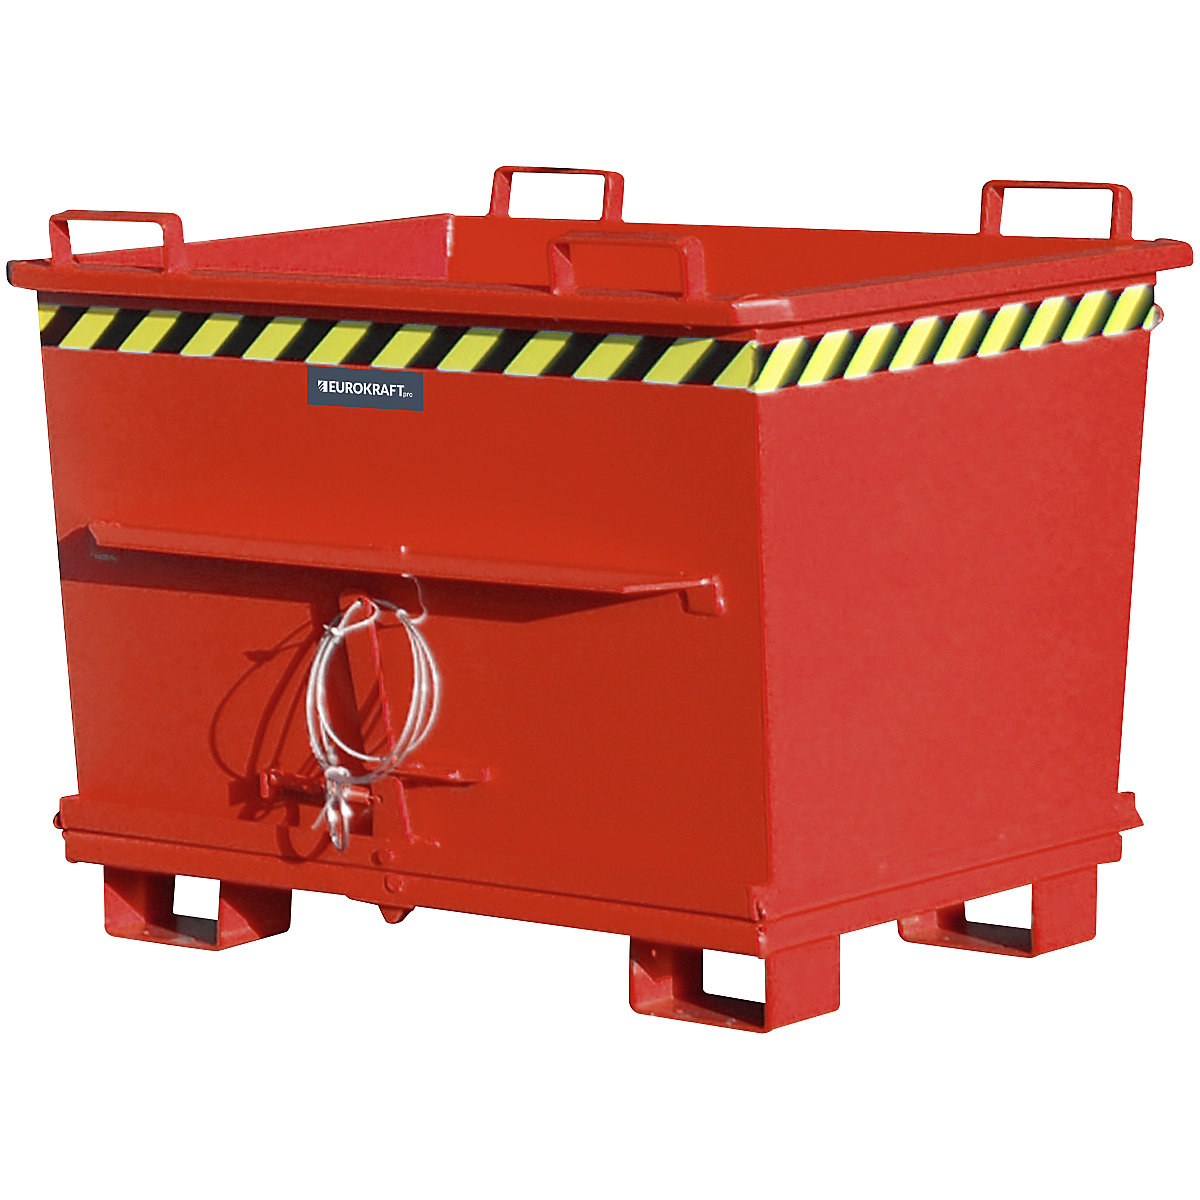 Stożkowy pojemnik z dnem klapowym – eurokraft pro, poj. 0,7 m³, nośność 1500 kg, czerwony, RAL 3000-16